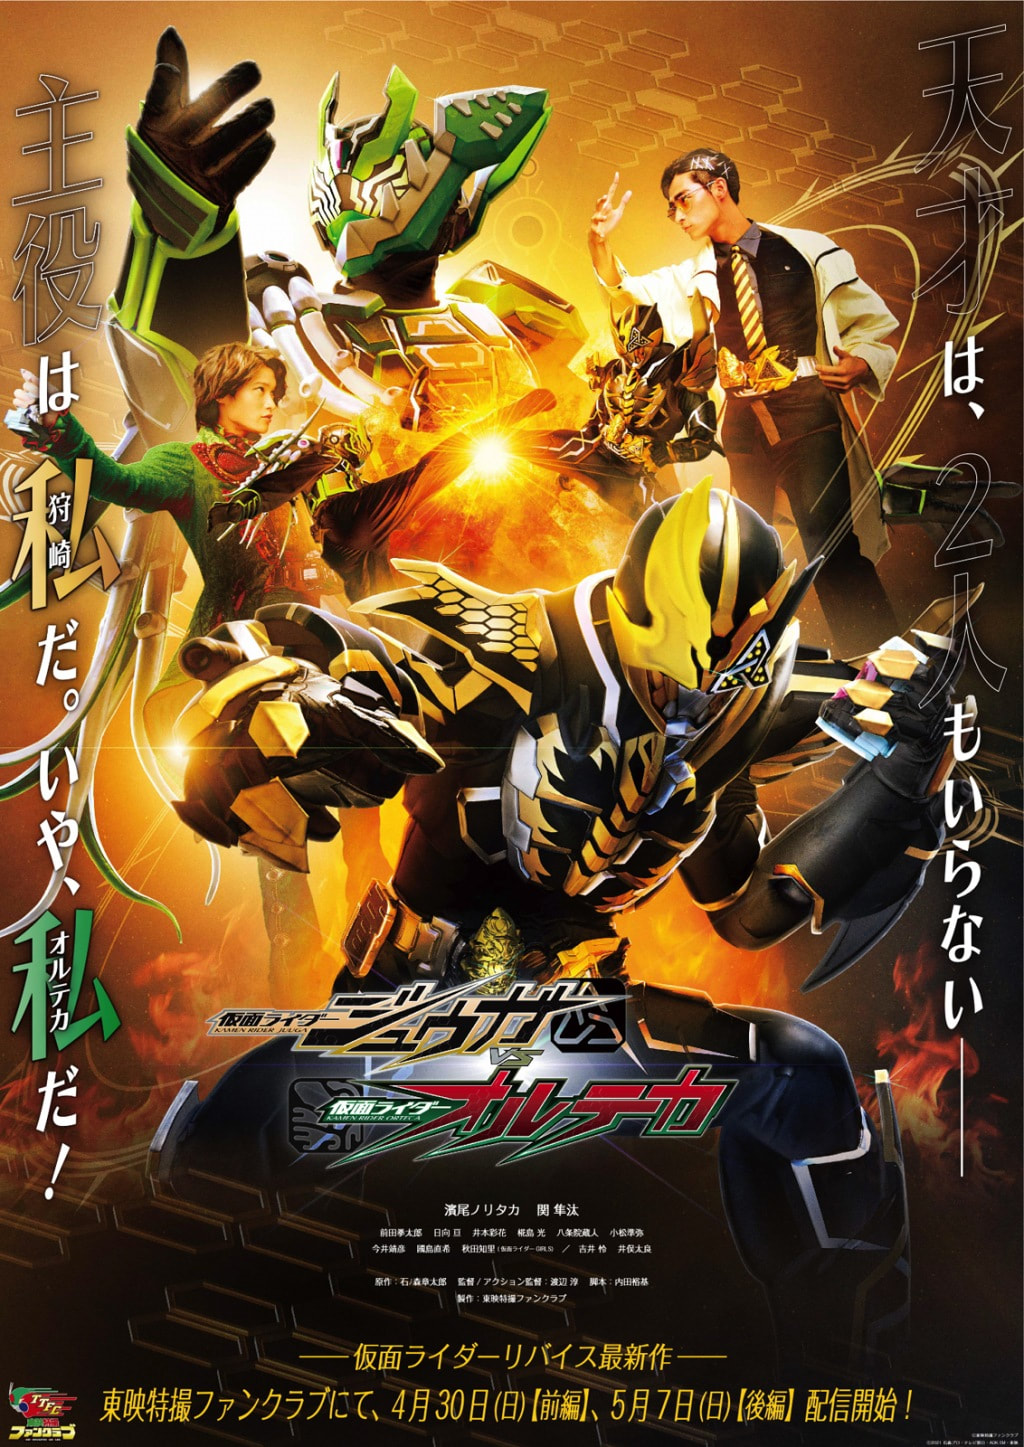 Kamen Rider Juuga vs Kamen Rider Orteca- Kamen Rider Juuga vs Kamen Rider Orteca